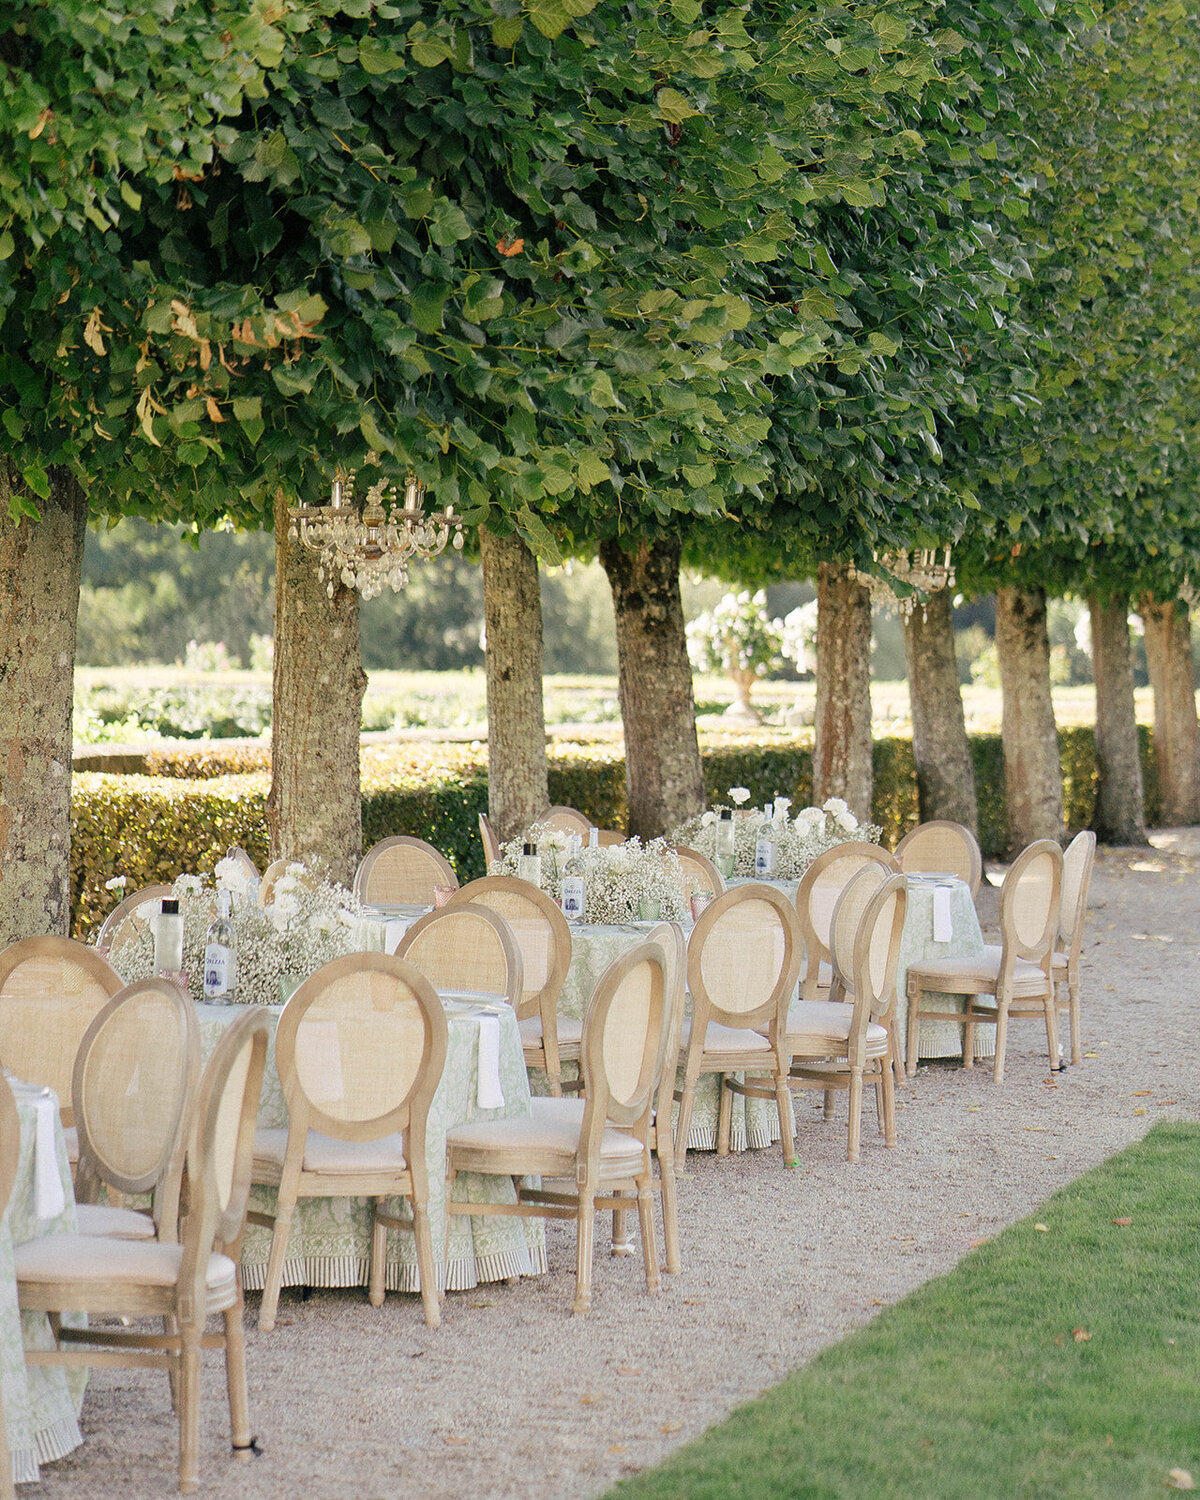 Chateau-du-grand-luce-wedding73